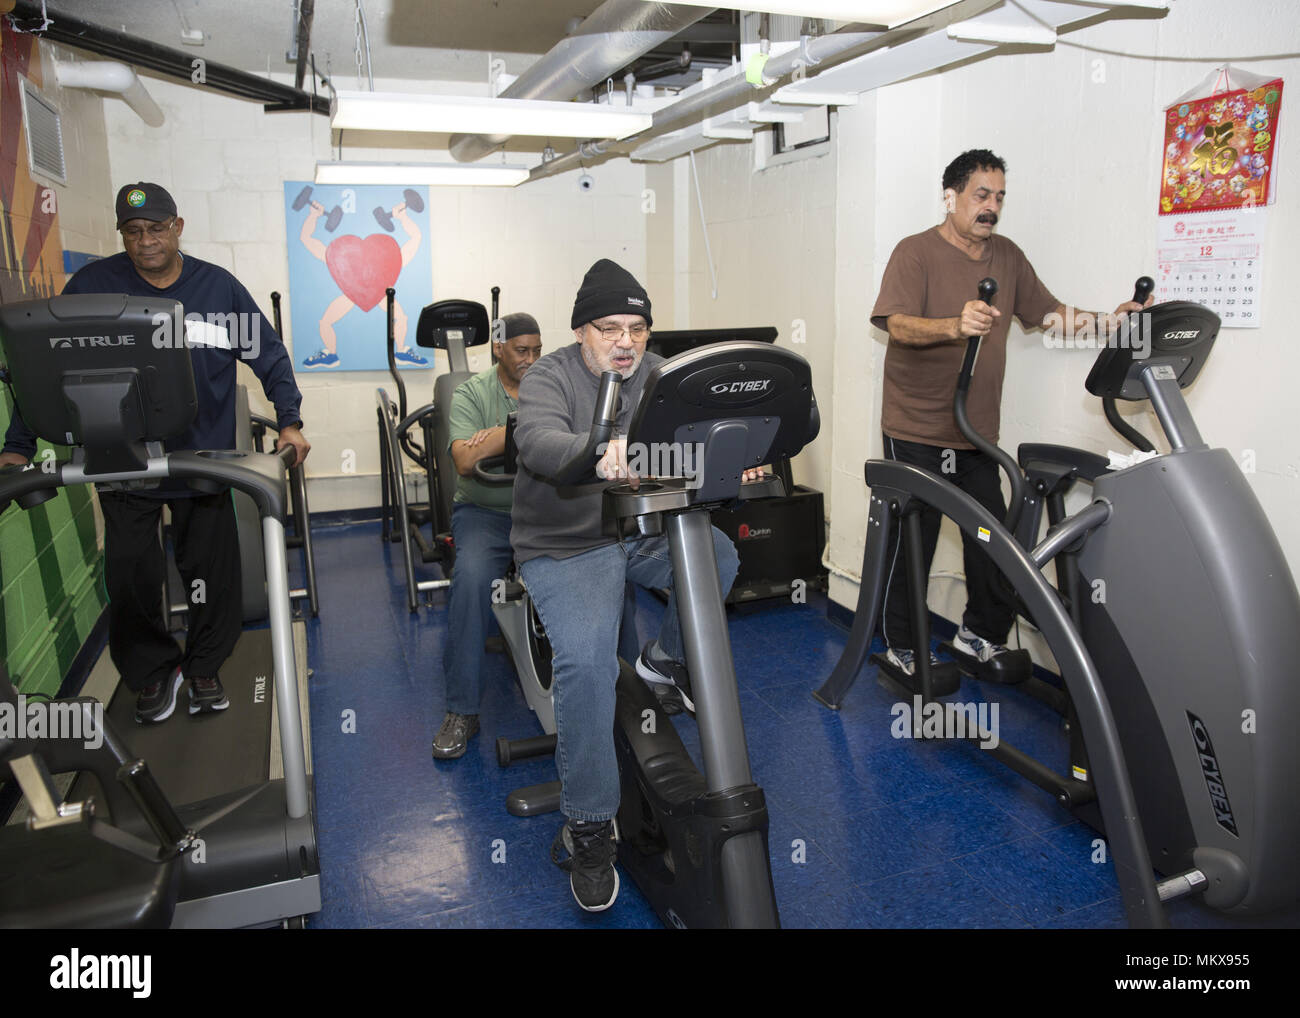 Les hommes de se tenir en forme, travaillant sur la machines d'exercice fournis à un centre principal régulateur sur Lower East Side, Manhattan, New York City. Banque D'Images